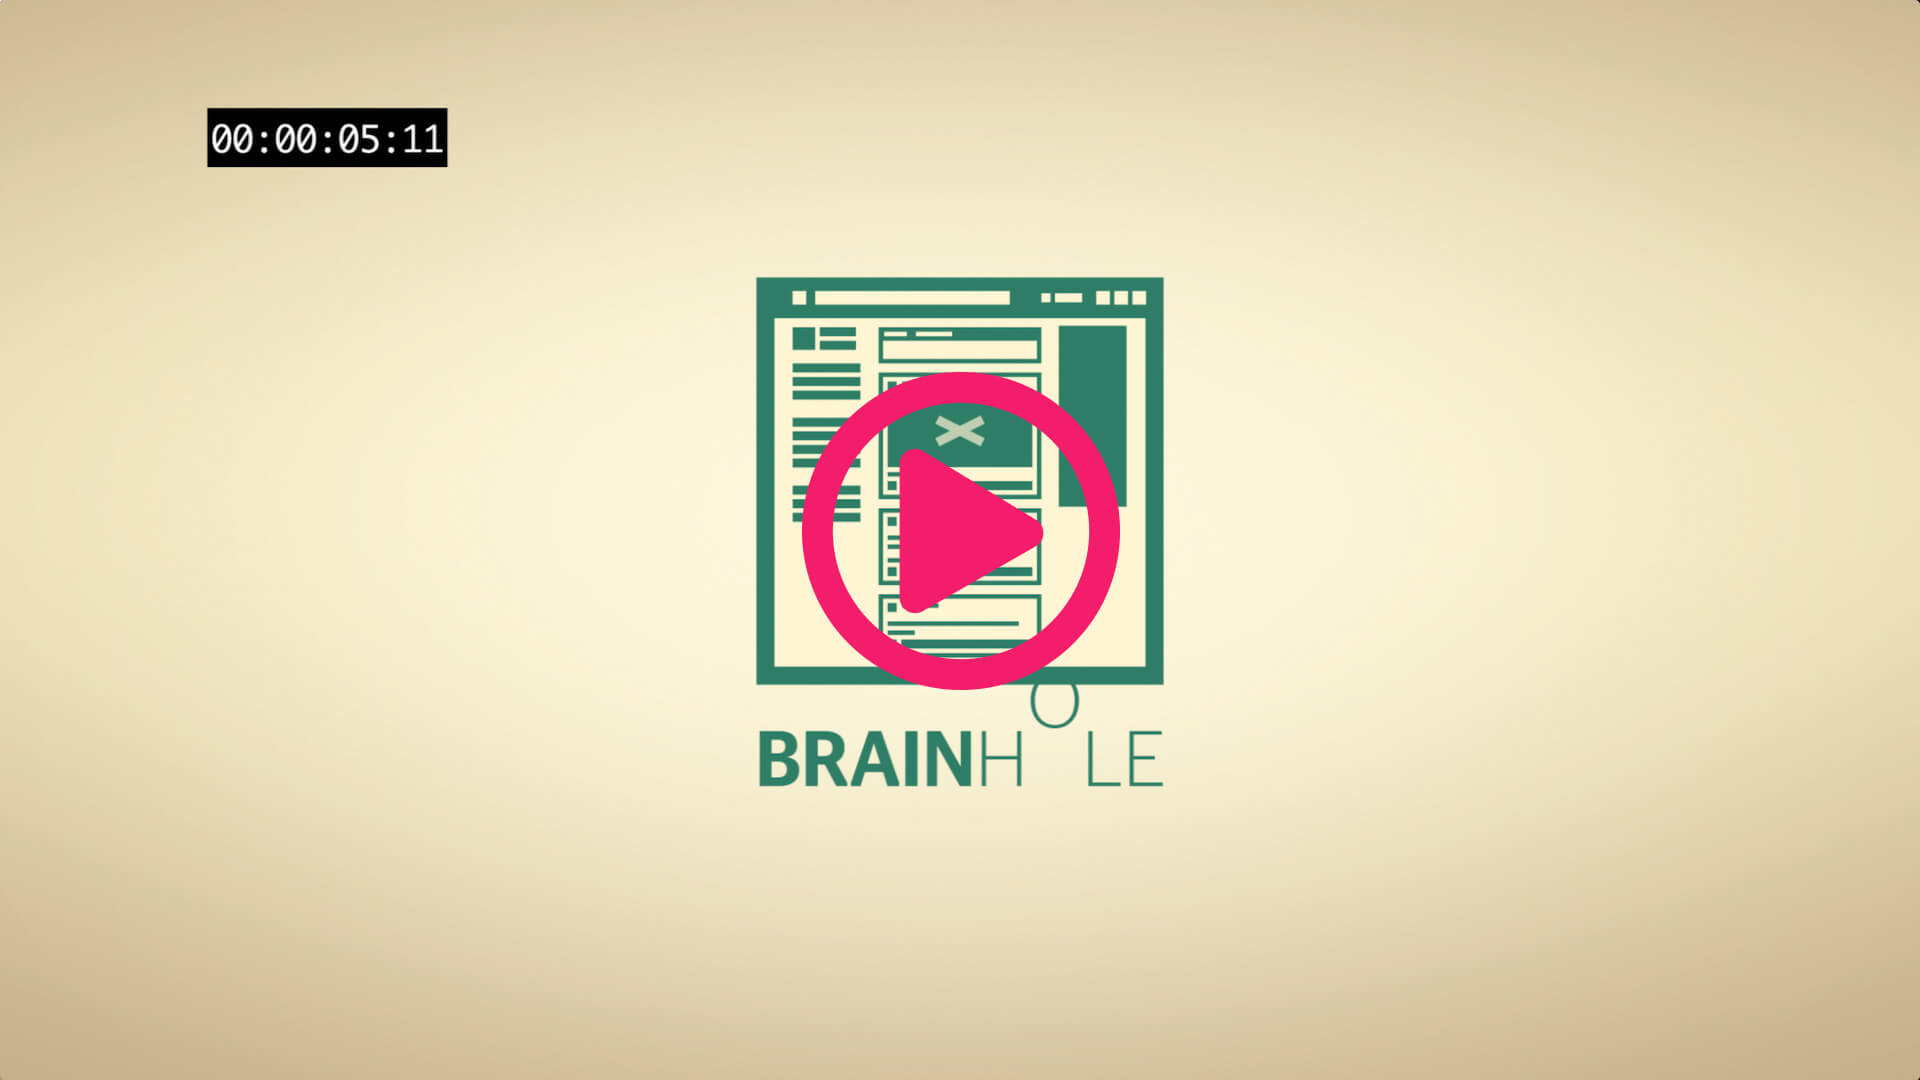 Brainhole Logo Example for bad Animation